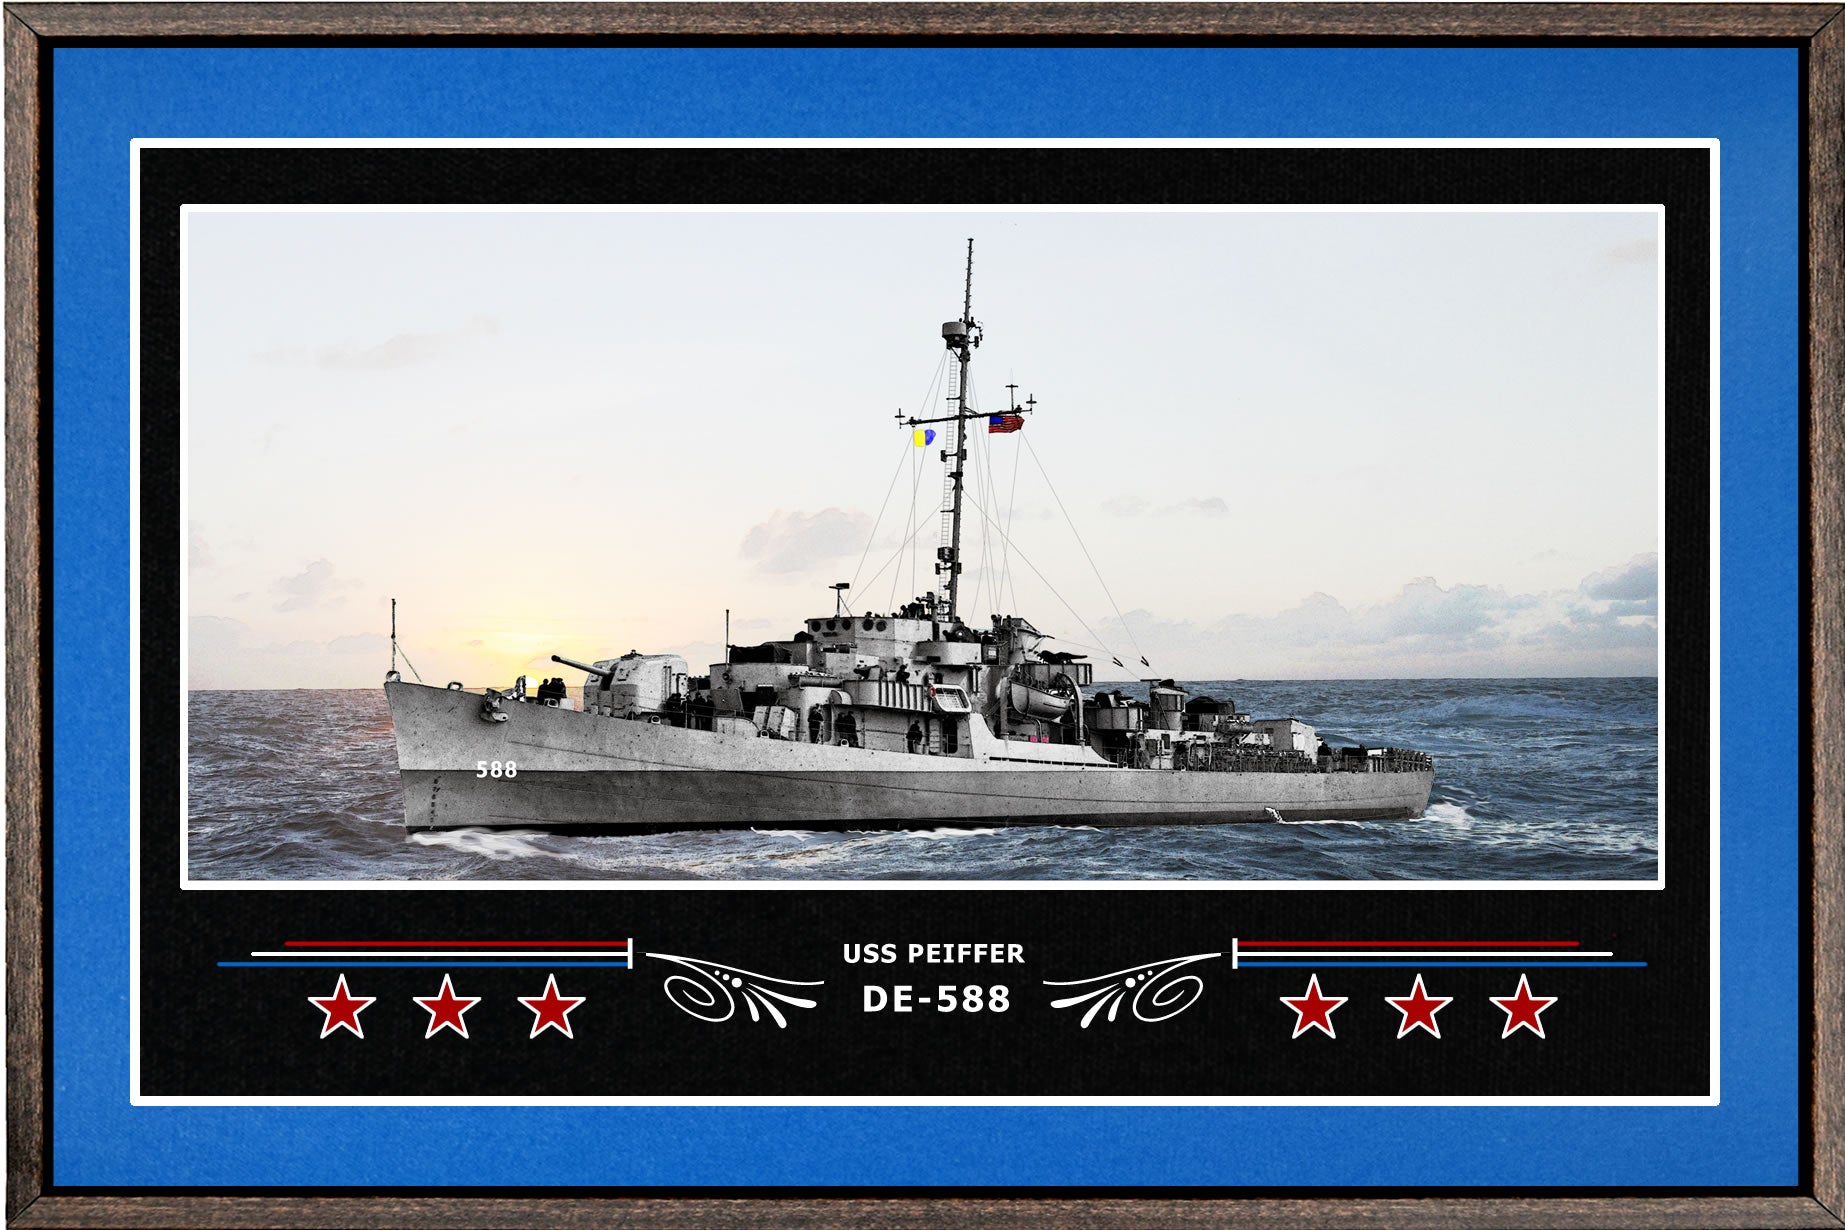 USS PEIFFER DE 588 BOX FRAMED CANVAS ART BLUE